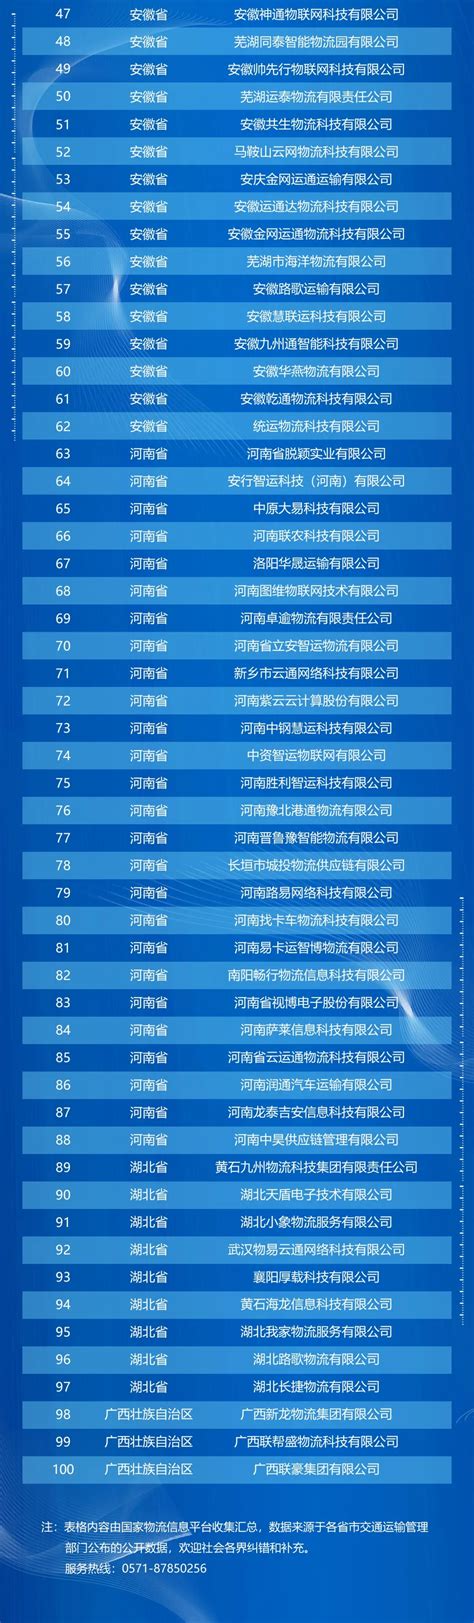 网络货运经营许可企业名单_资讯中心_中国物流与采购网